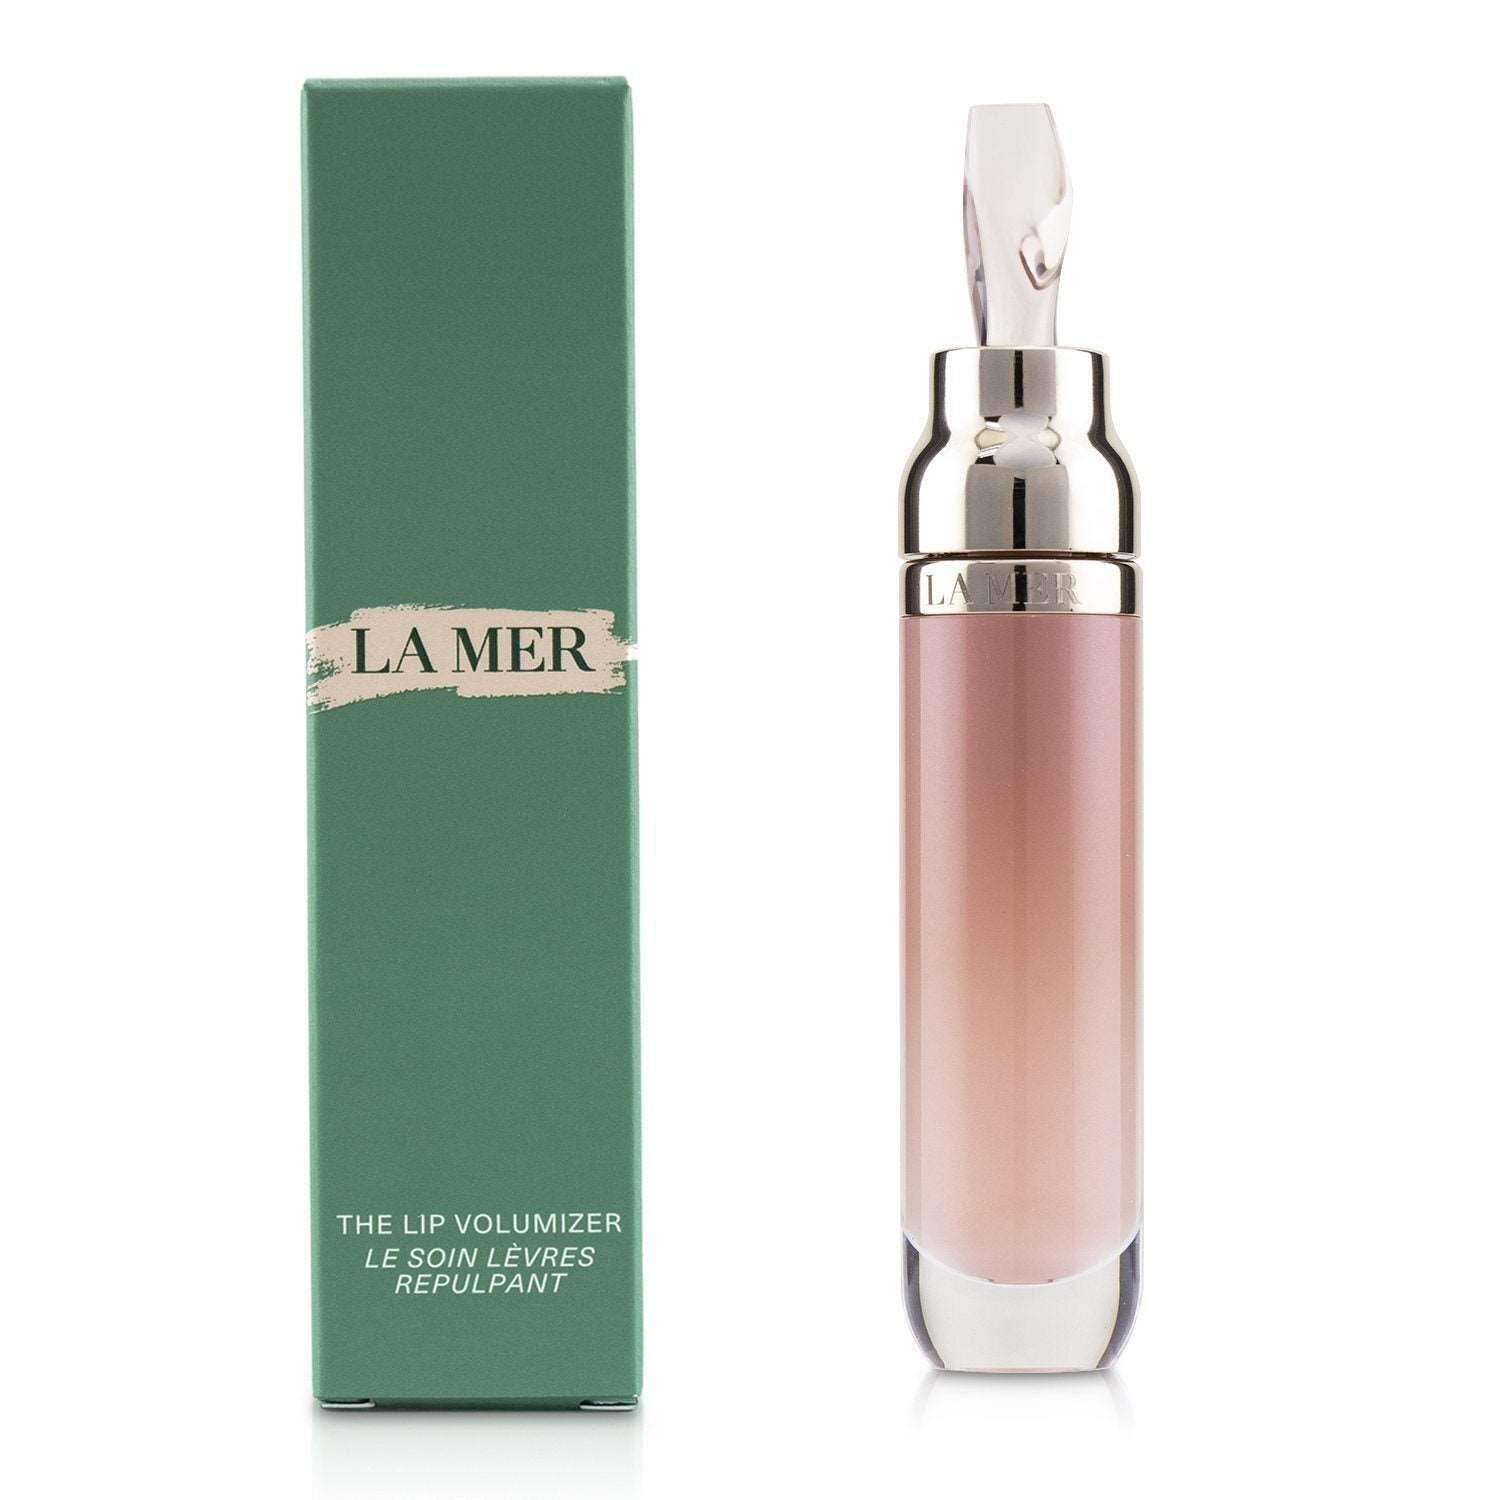 LA MER - The Lip Volumizer - 7ml/0.24oz 3P's Inclusive Beauty